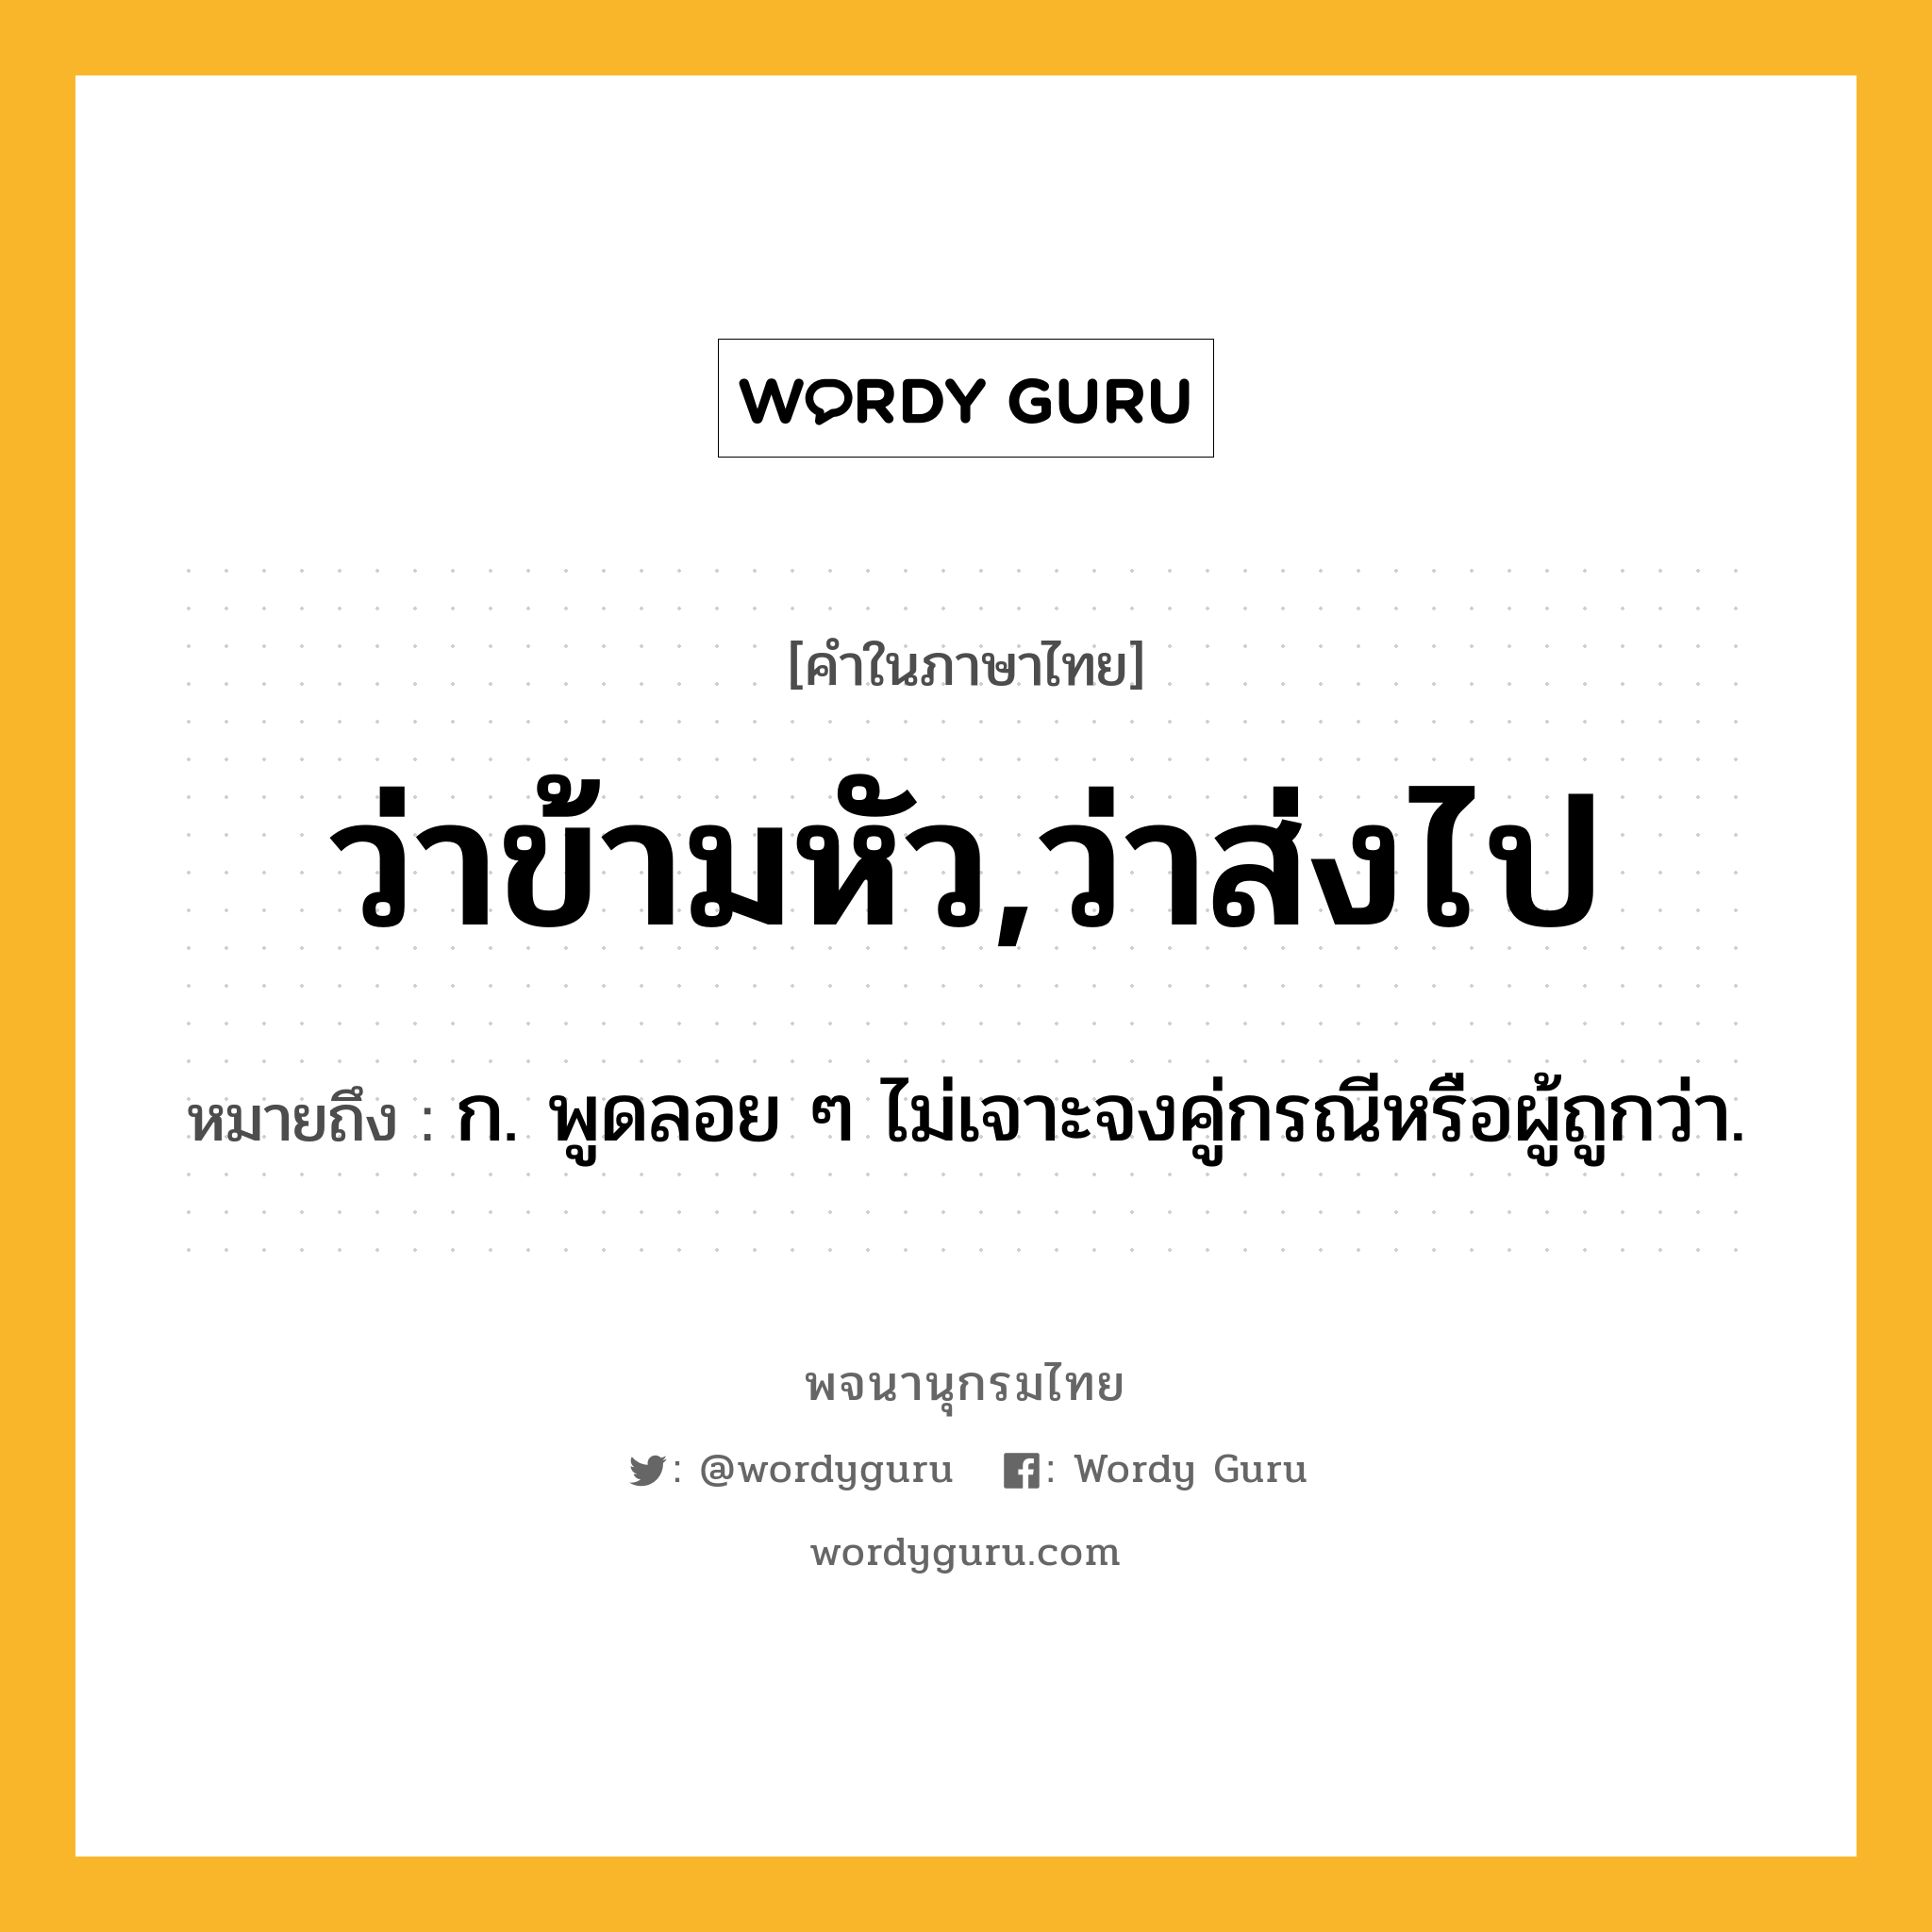 ว่าข้ามหัว,ว่าส่งไป หมายถึงอะไร?, คำในภาษาไทย ว่าข้ามหัว,ว่าส่งไป หมายถึง ก. พูดลอย ๆ ไม่เจาะจงคู่กรณีหรือผู้ถูกว่า.